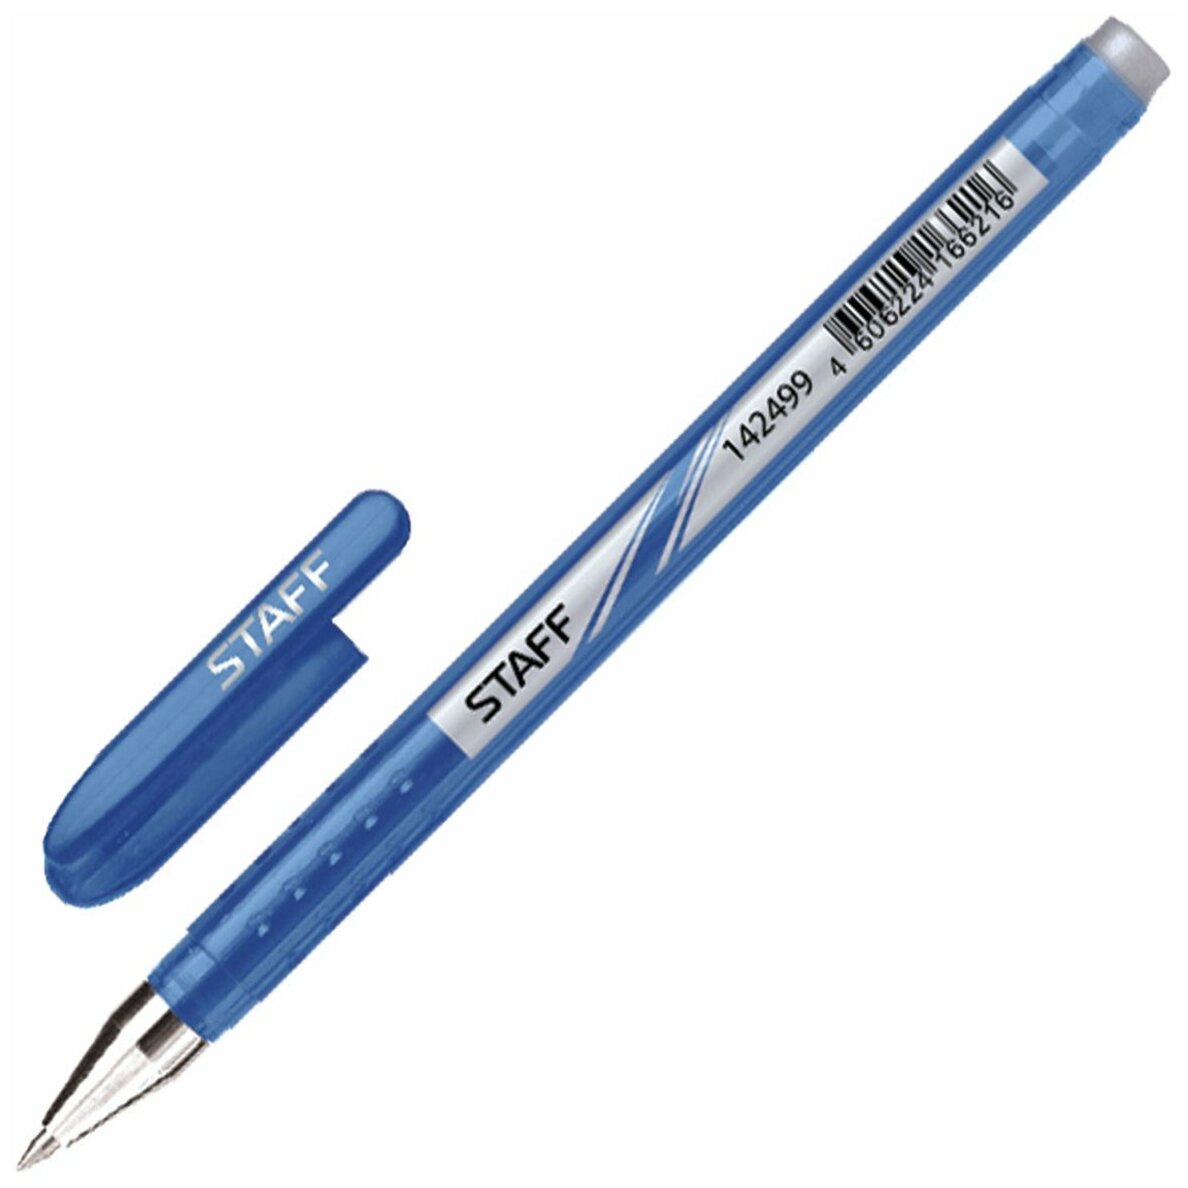 Ручка стираемая гелевая Staff корпус синий, хромированные детали, 0,5 мм, линия 0,38 мм, синяя (142499)